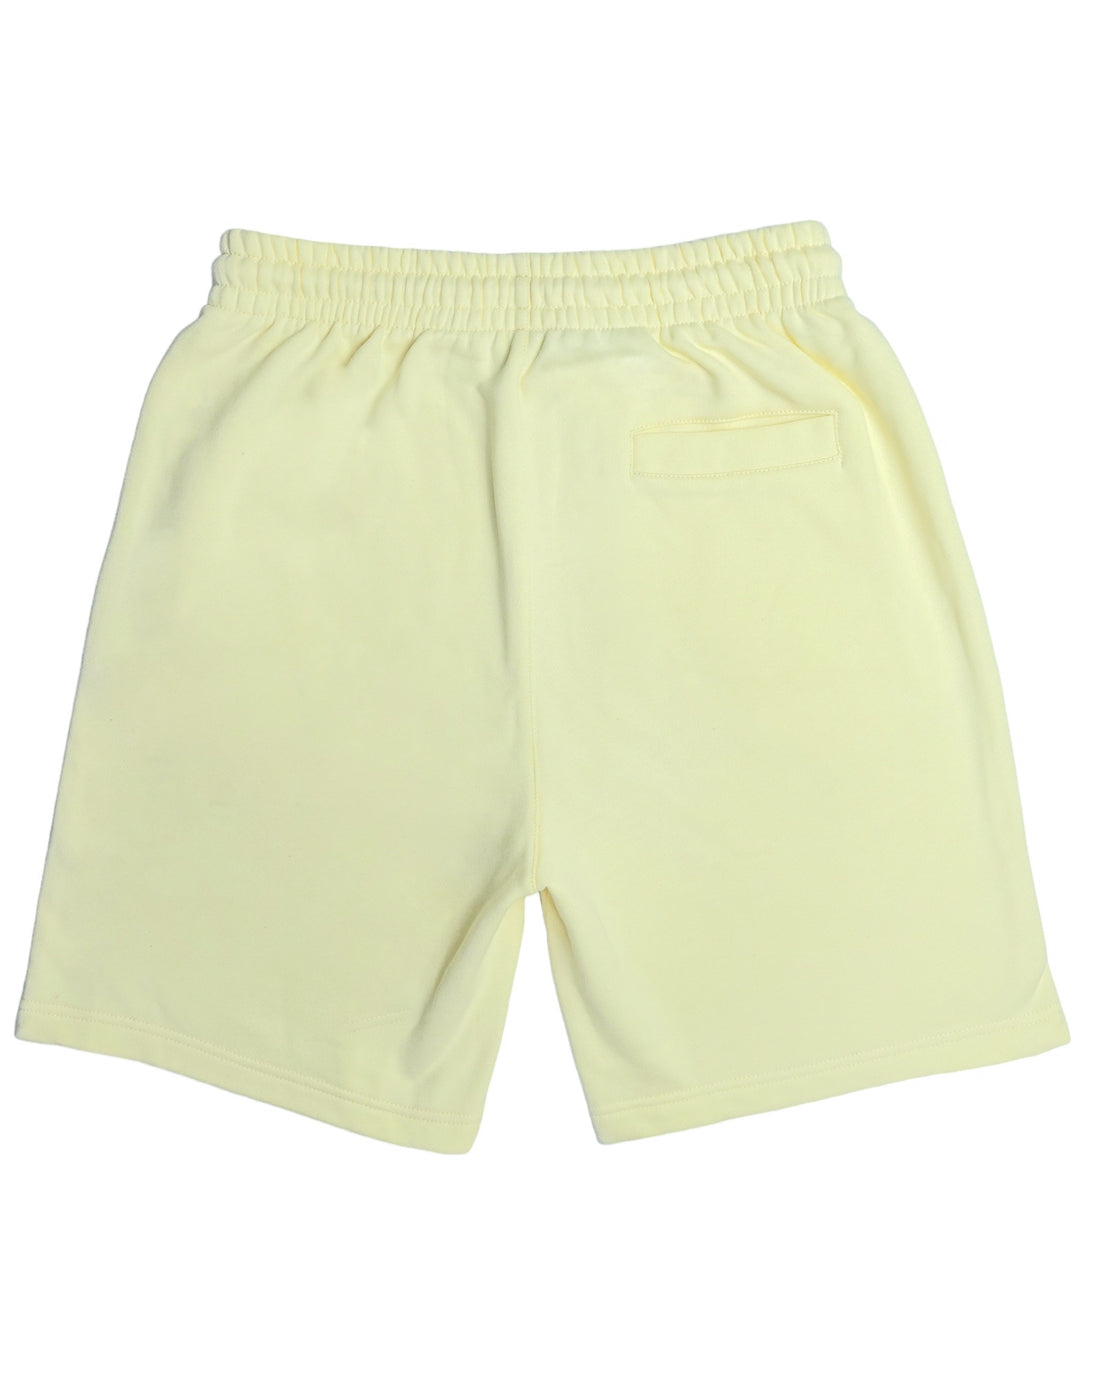 Canary Cream Shorts